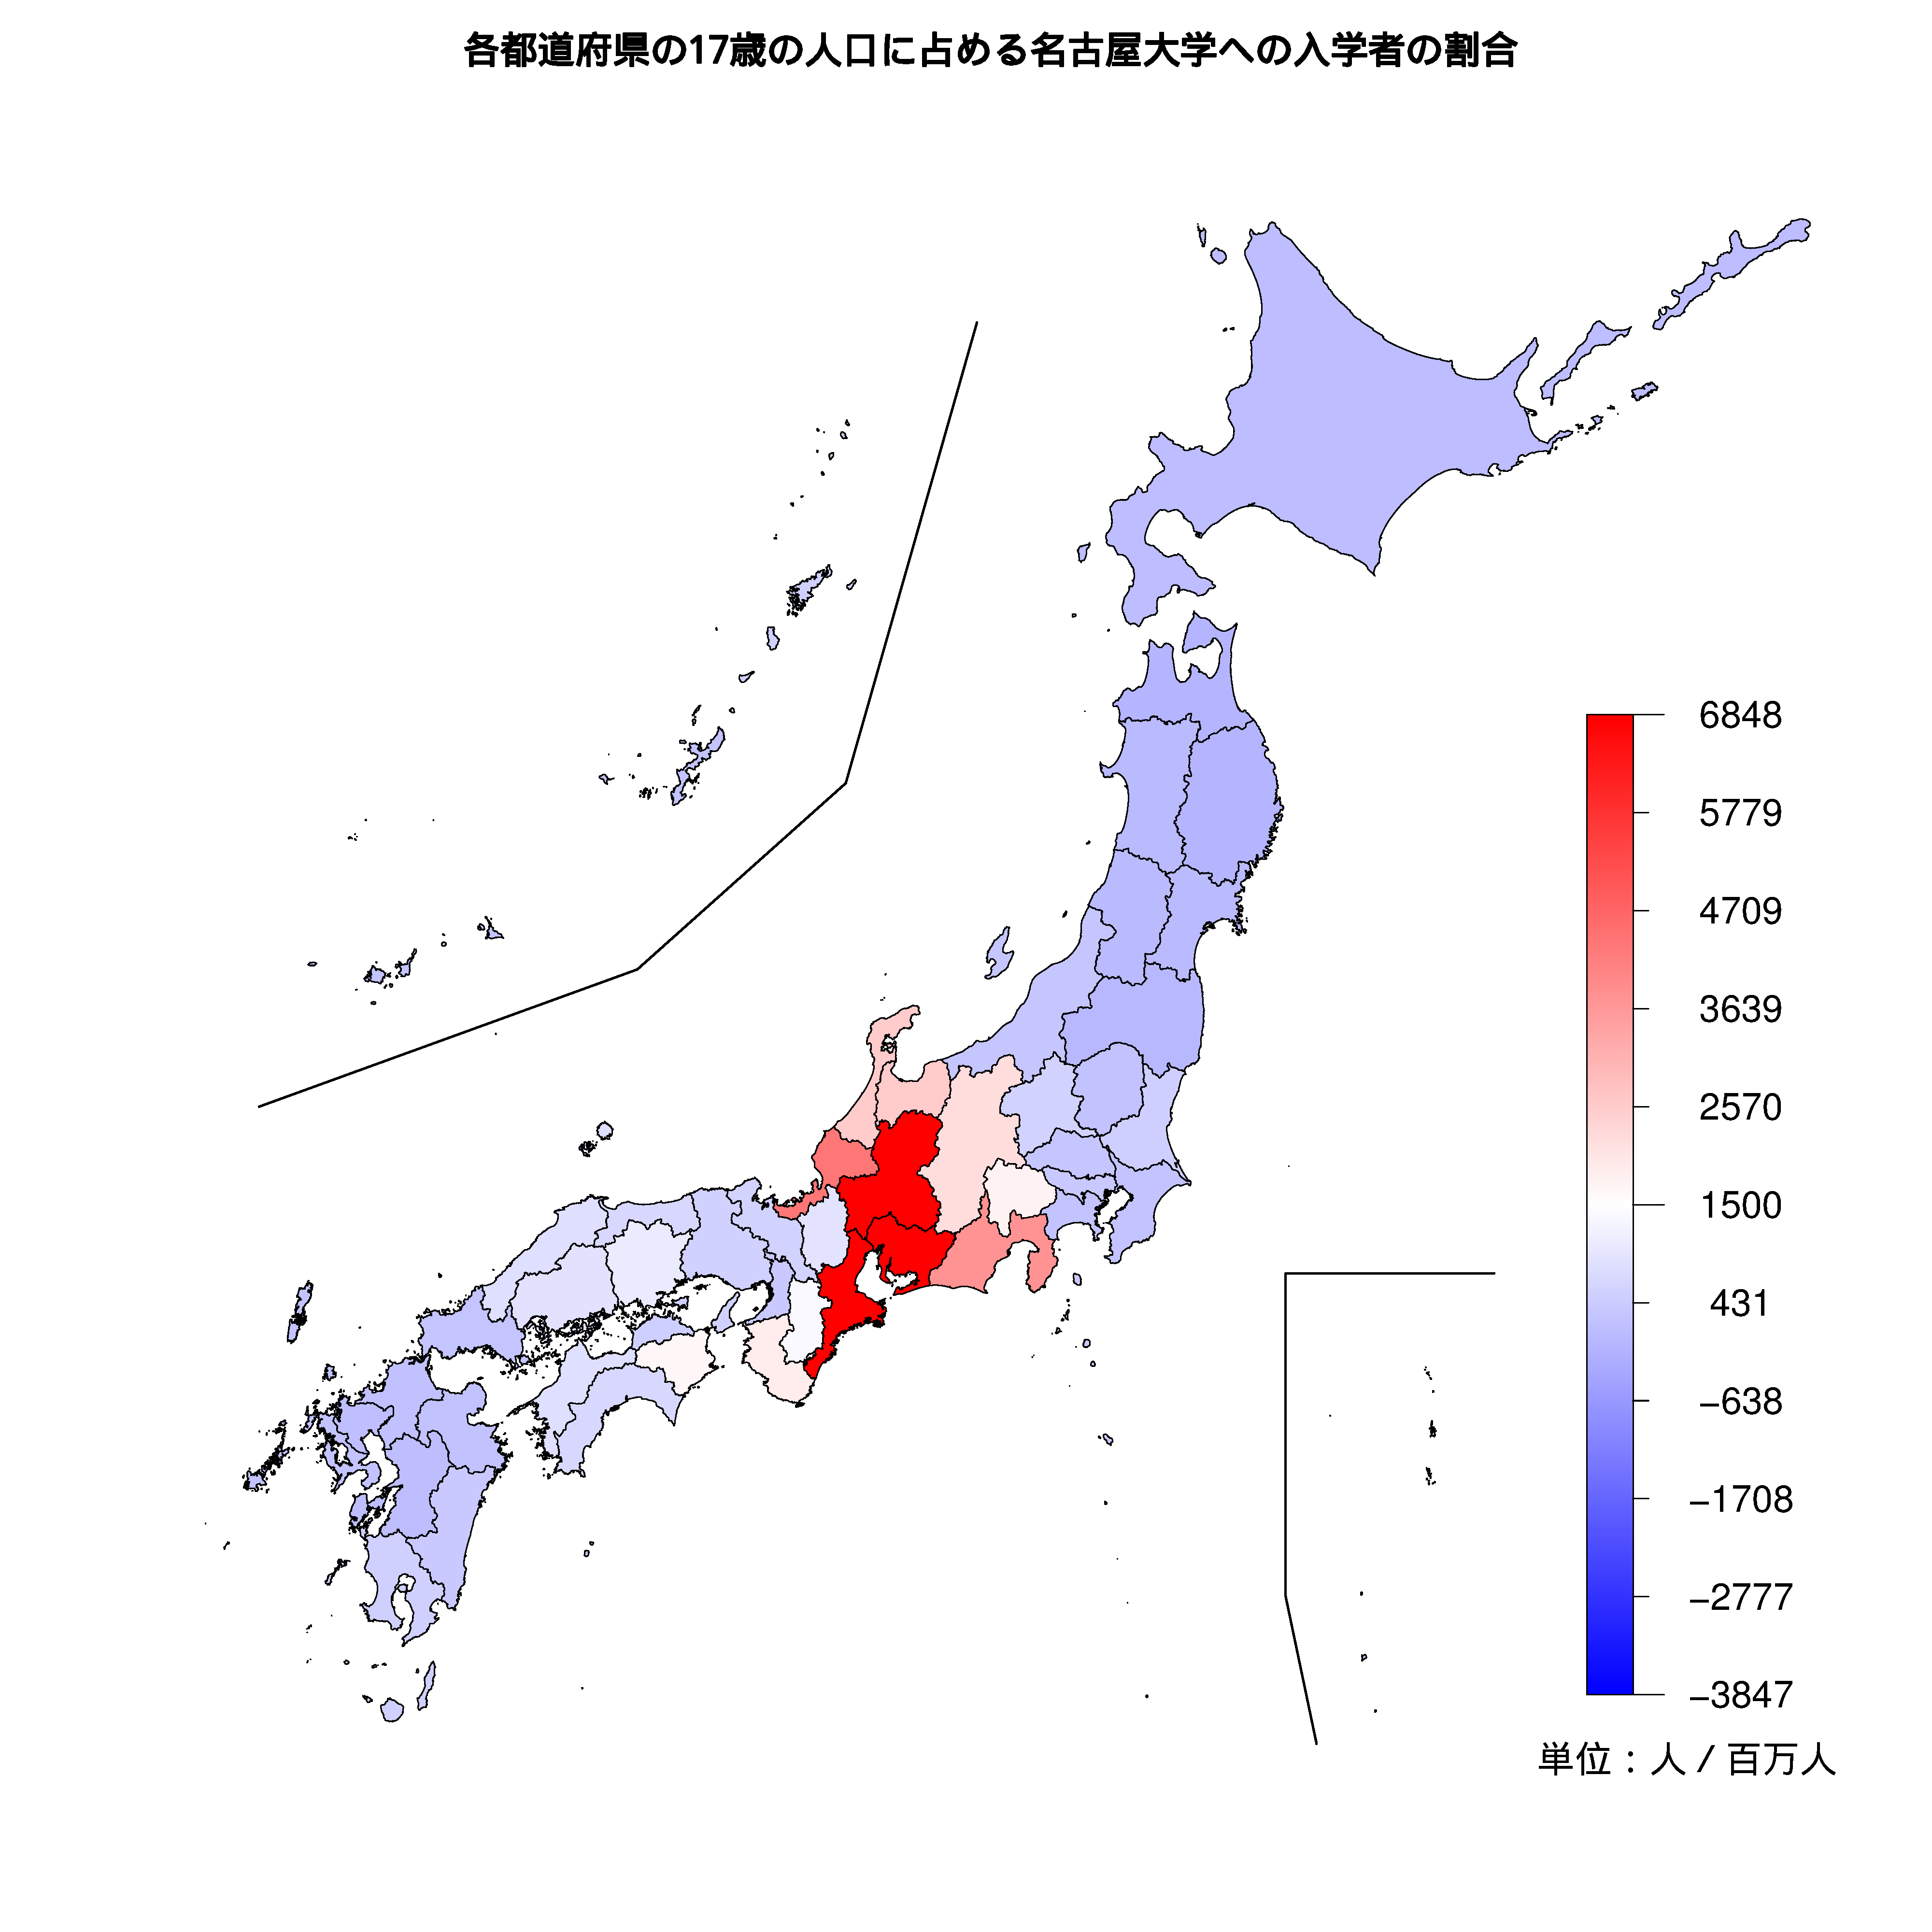 名古屋大学への入学者が多い都道府県の色分け地図